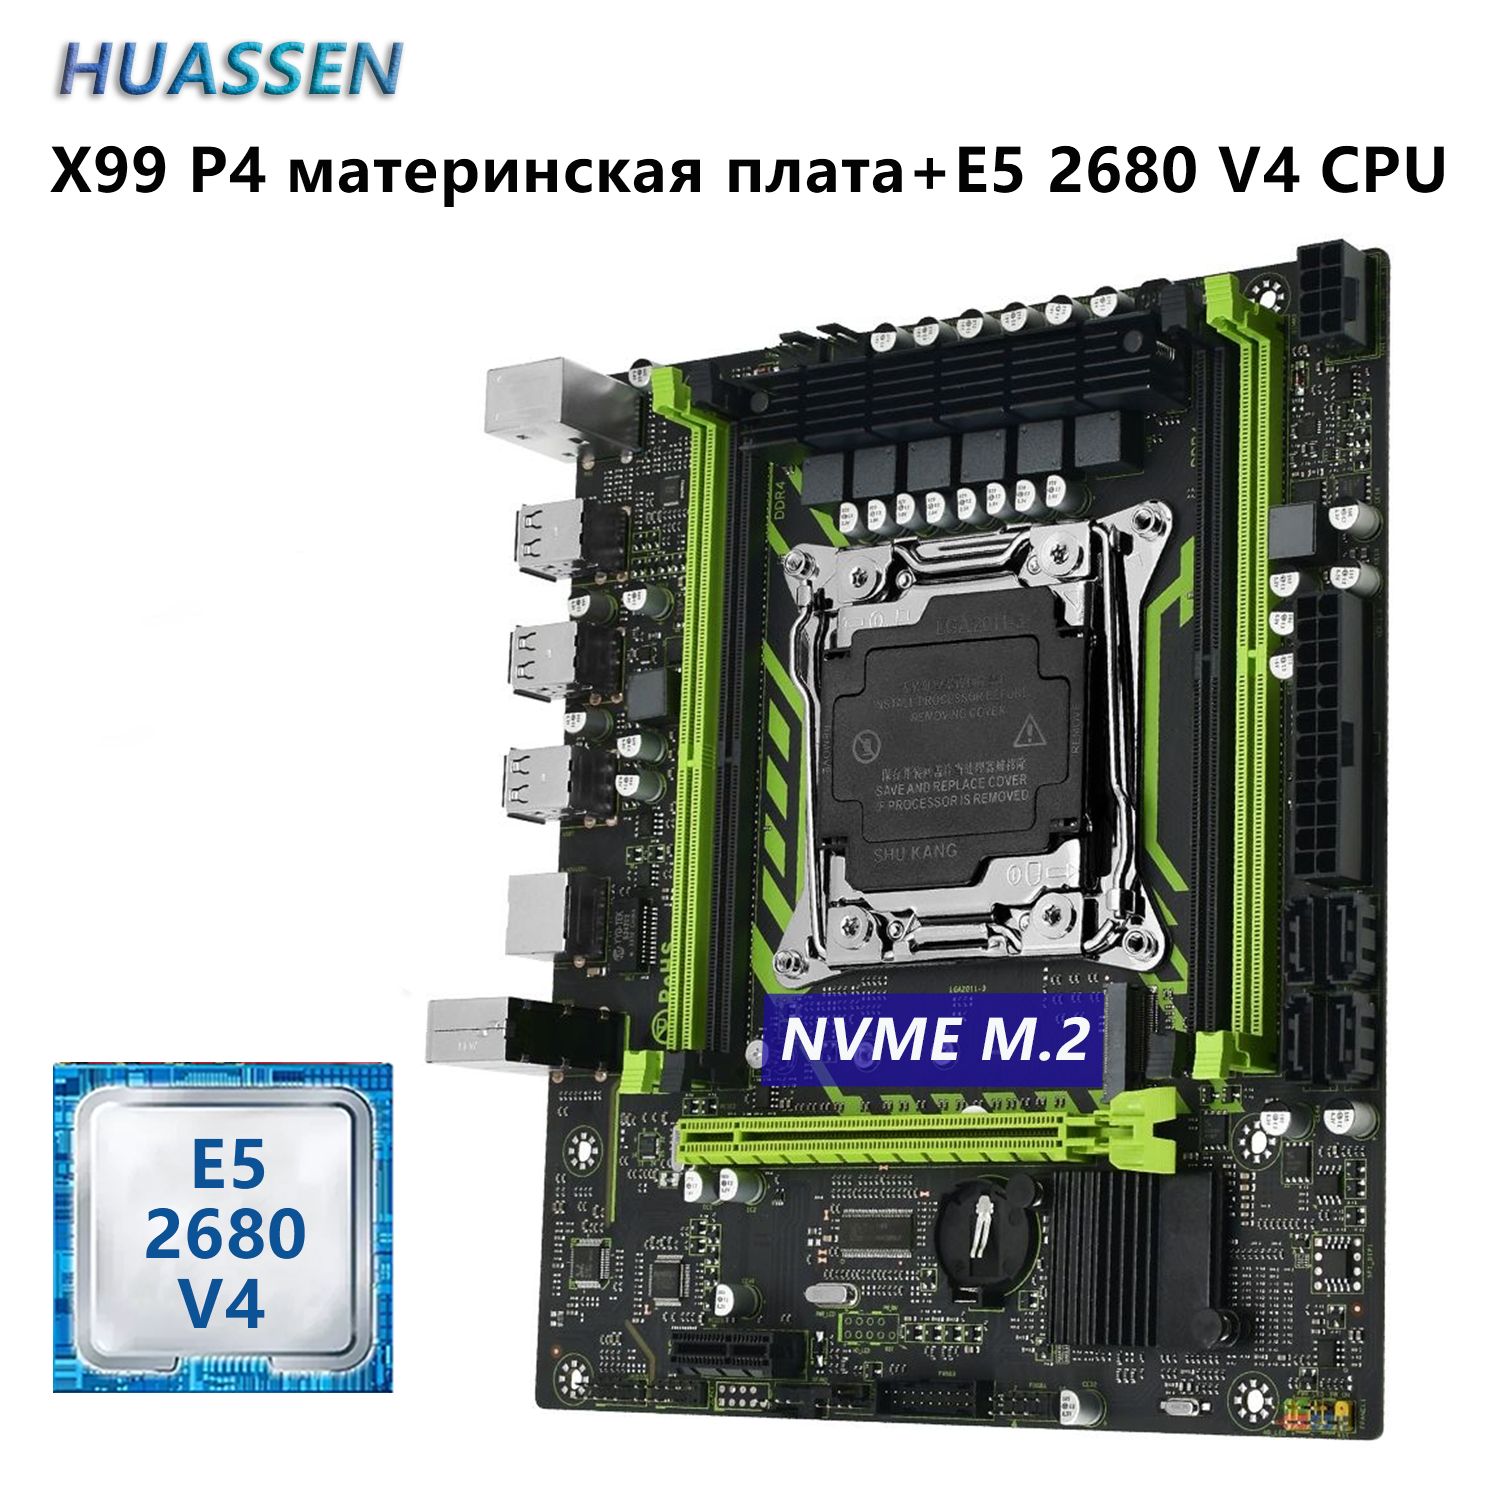 HUASSENМатеринскаяплатаX99P4материнскаяплата+XeonE52680V4CPU2,4ГГц(14ядер/28потока)Комплект